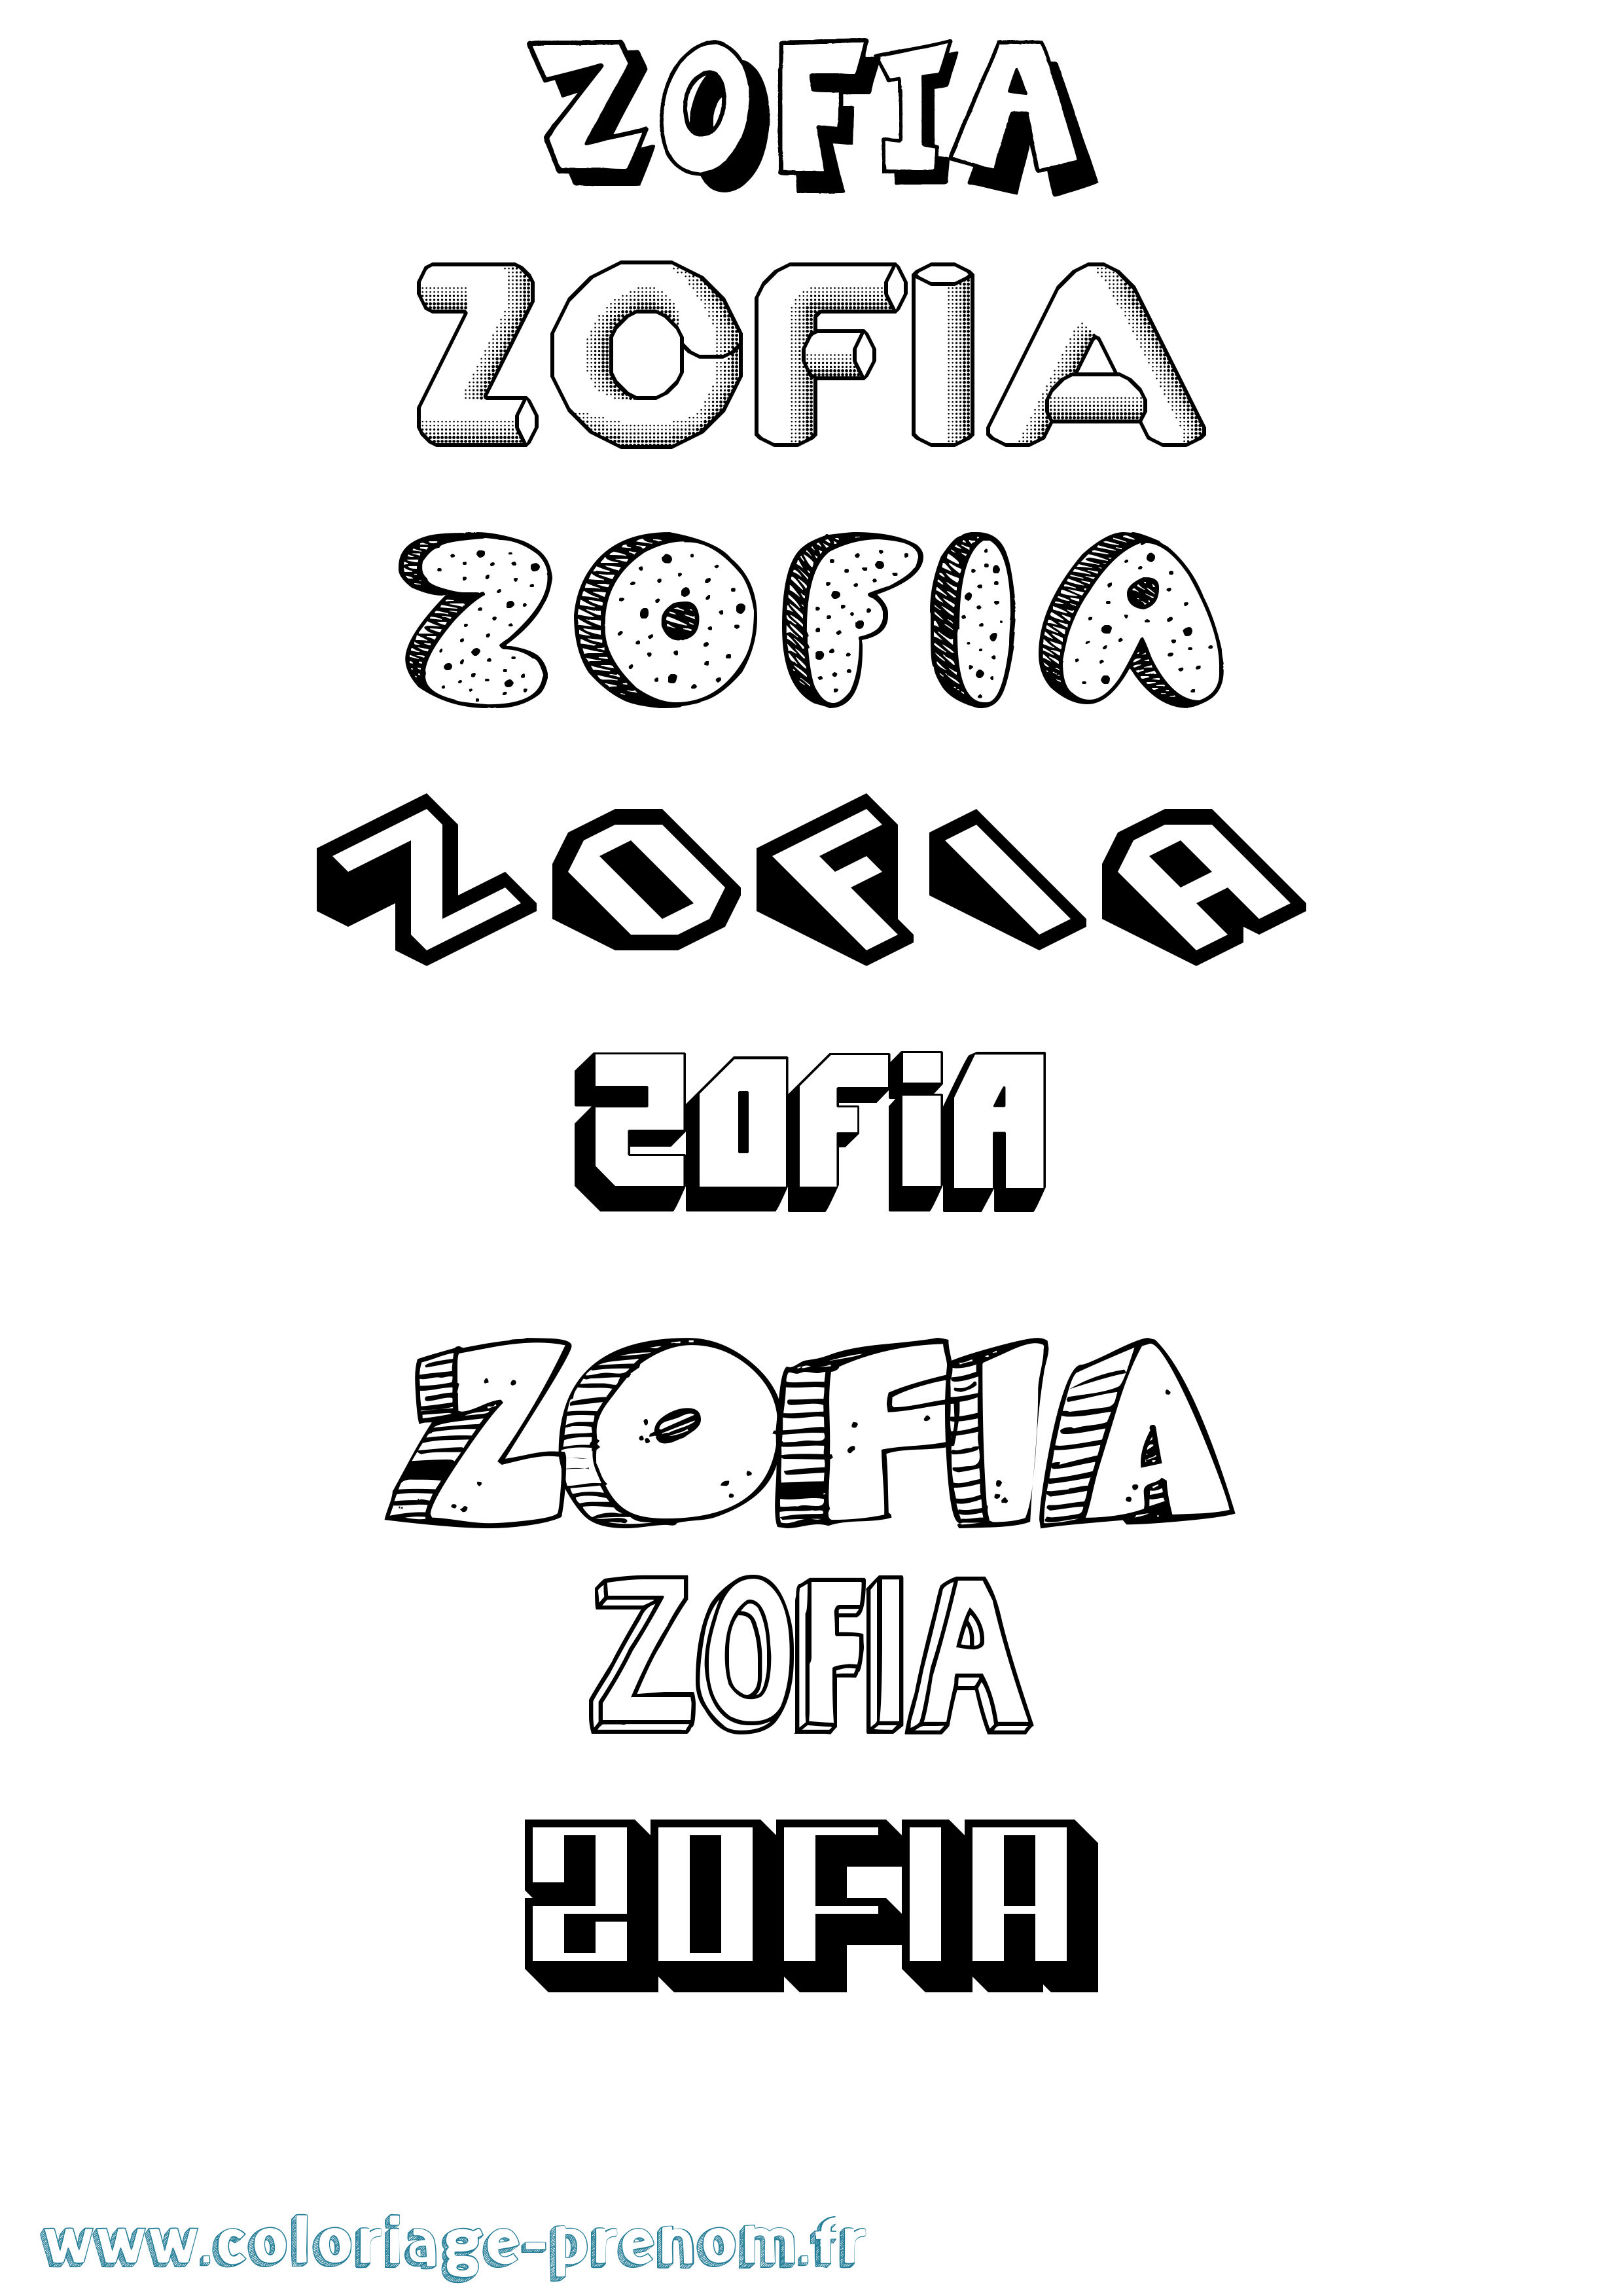 Coloriage prénom Zofia Effet 3D